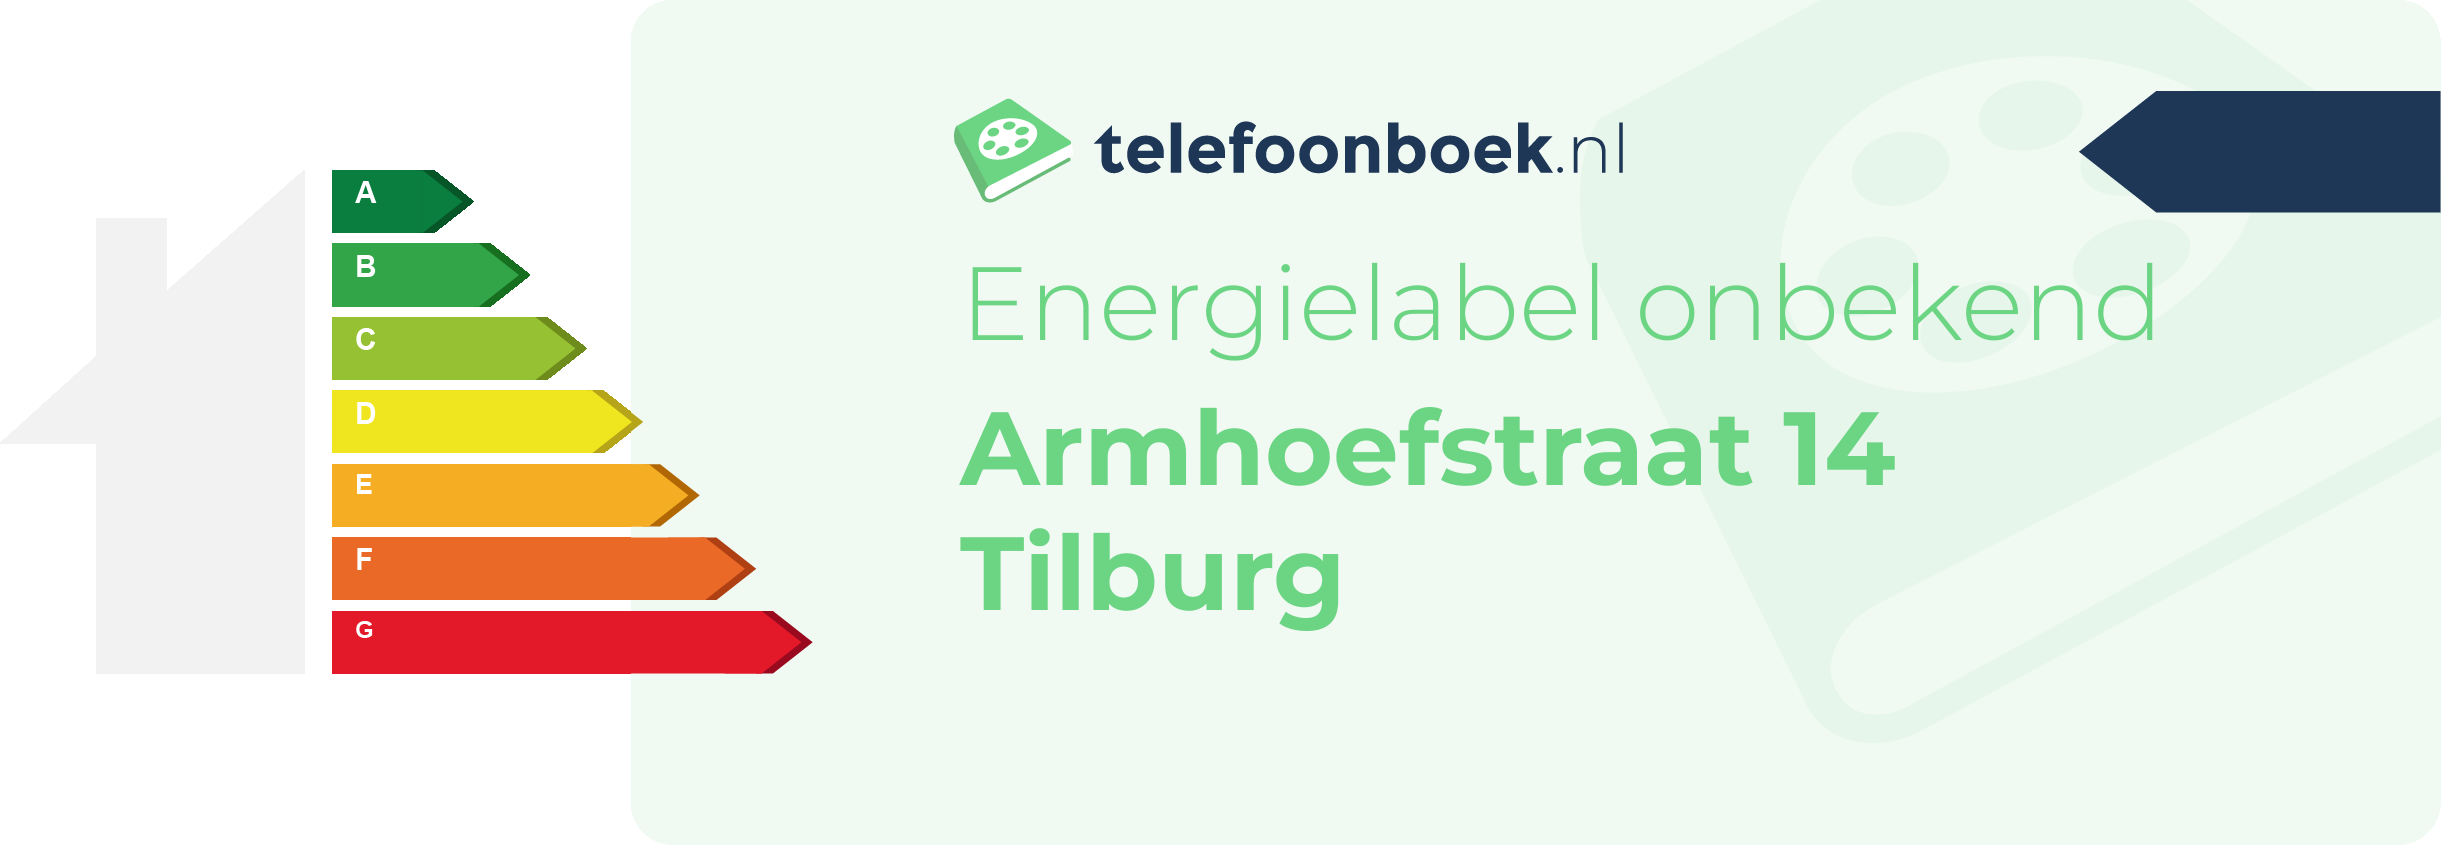 Energielabel Armhoefstraat 14 Tilburg